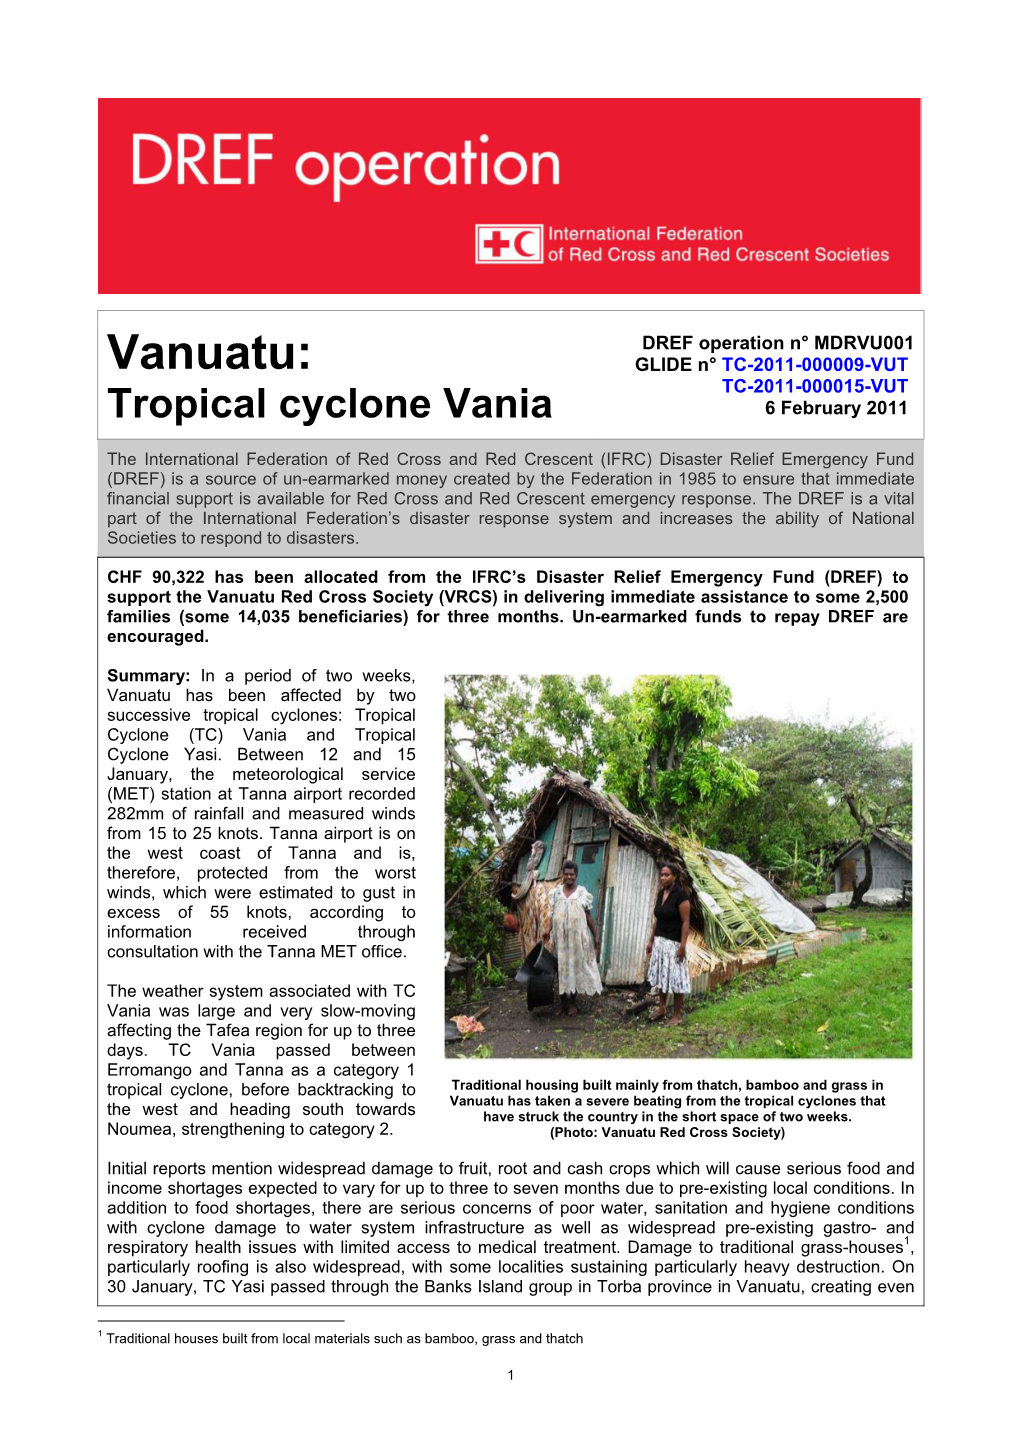 Vanuatu: GLIDE N° TC-2011-000009-VUT TC-2011-000015-VUT Tropical Cyclone Vania 6 February 2011